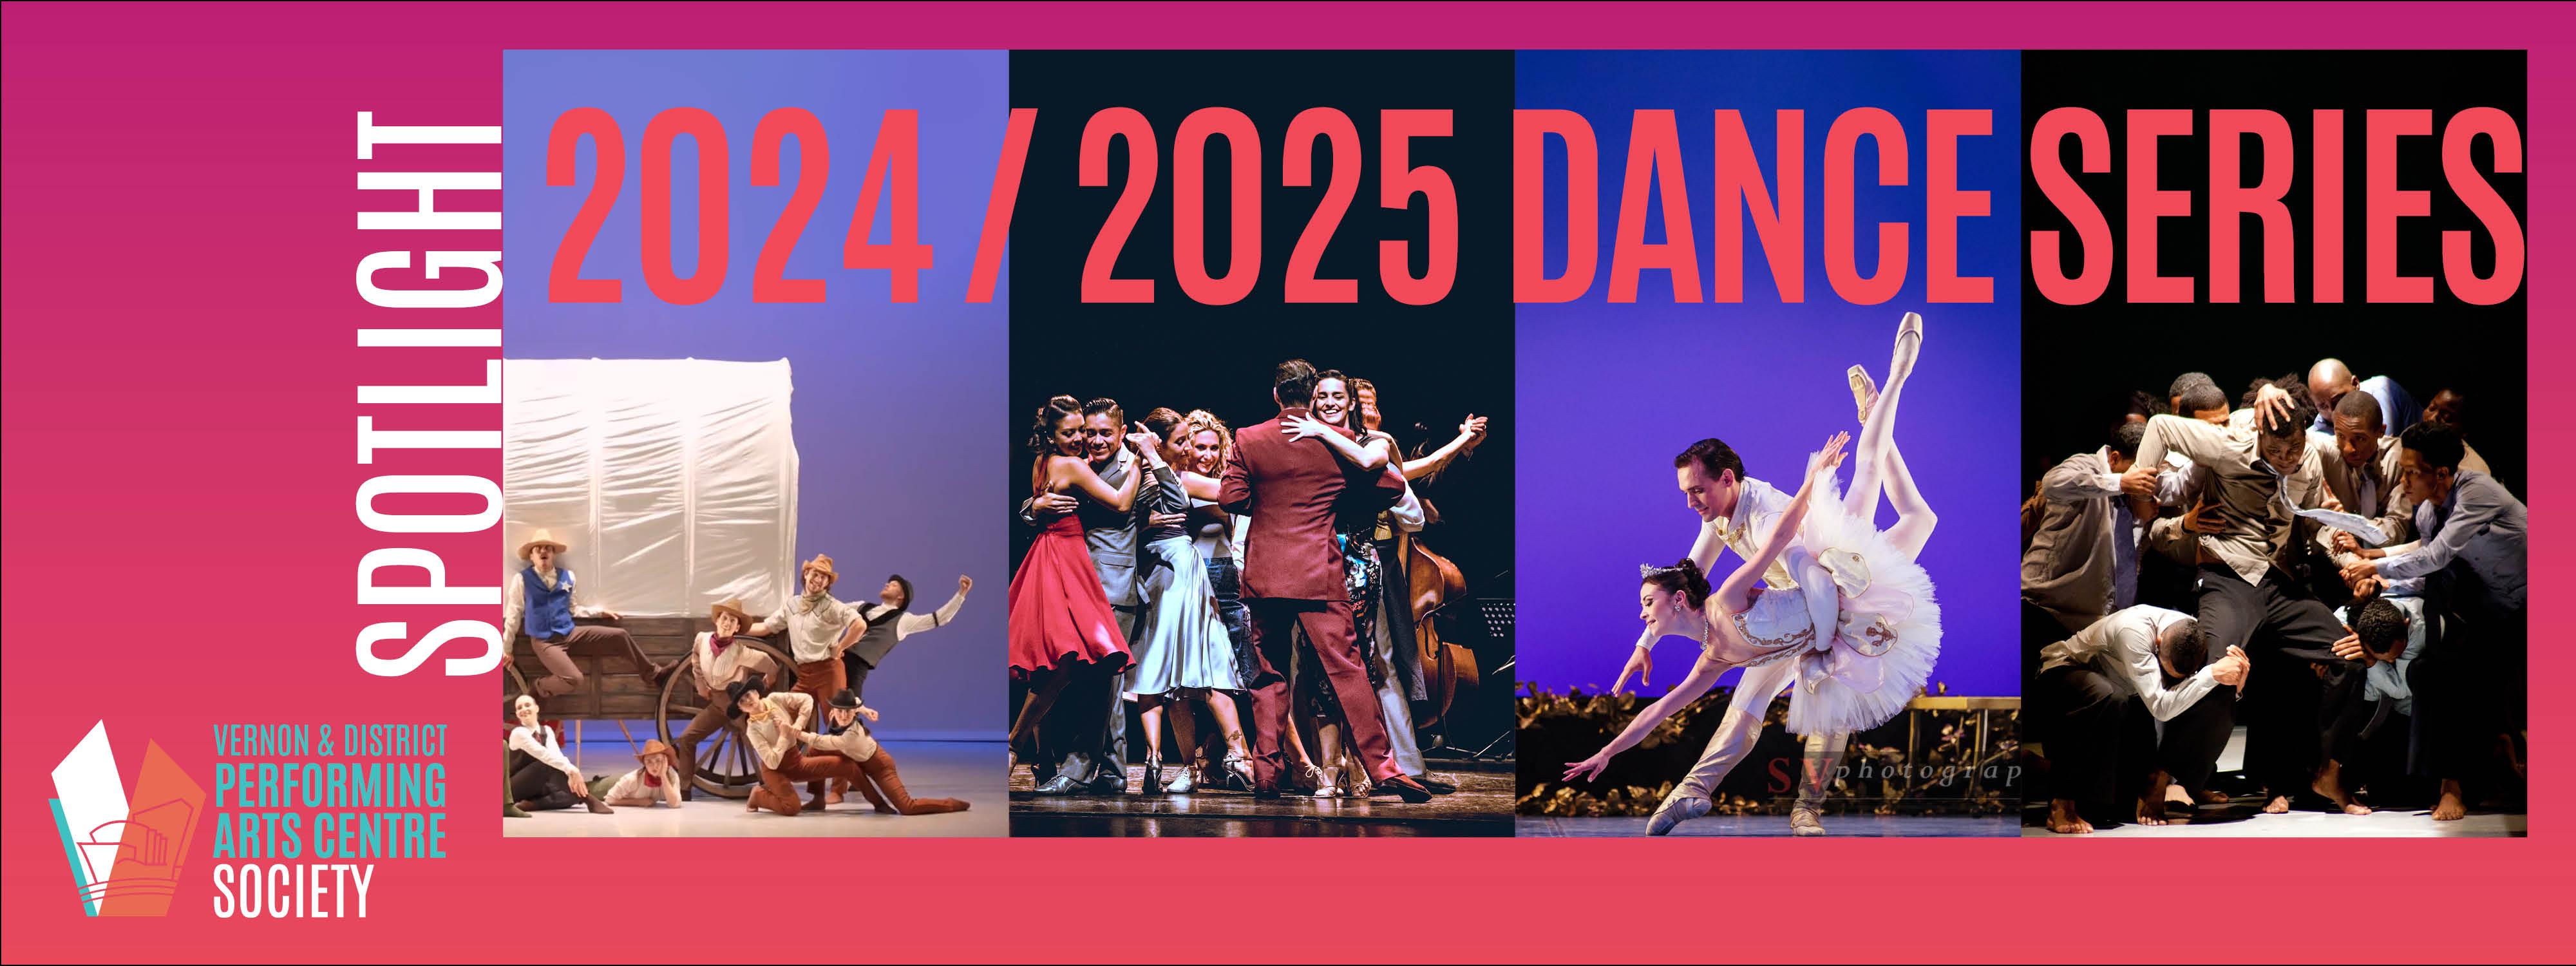 Dance Series Banner 2024 2025 Ticketseller